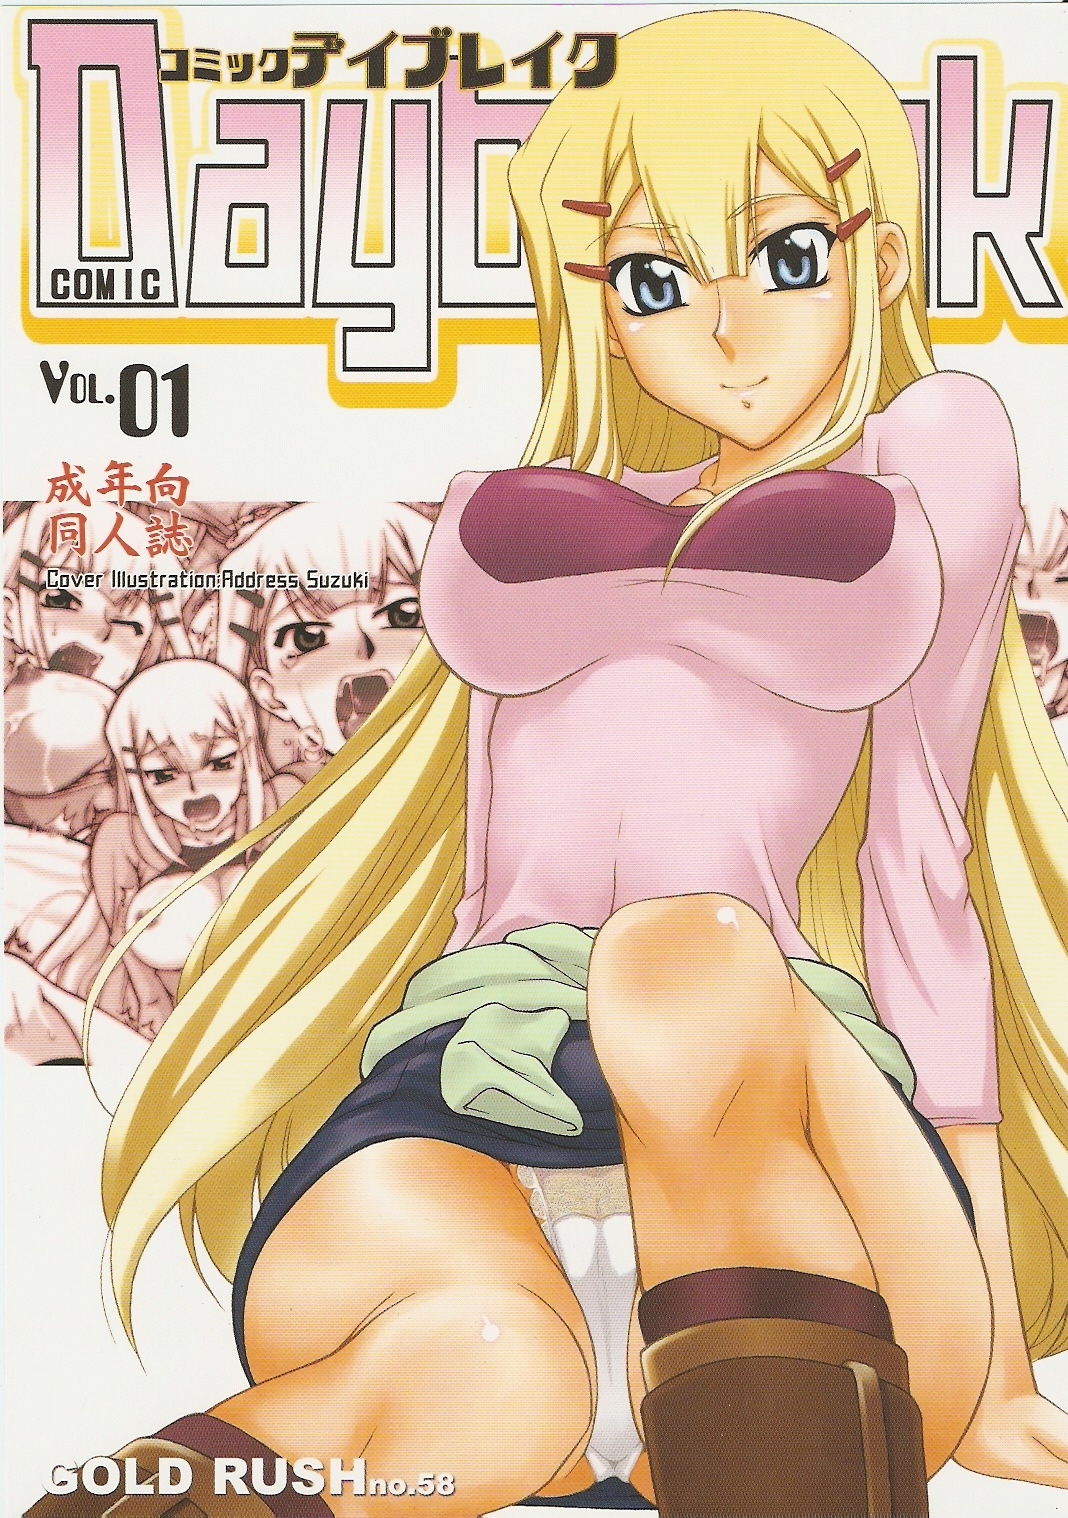 Comic Daybreak Vol.01 gundam hentai manga